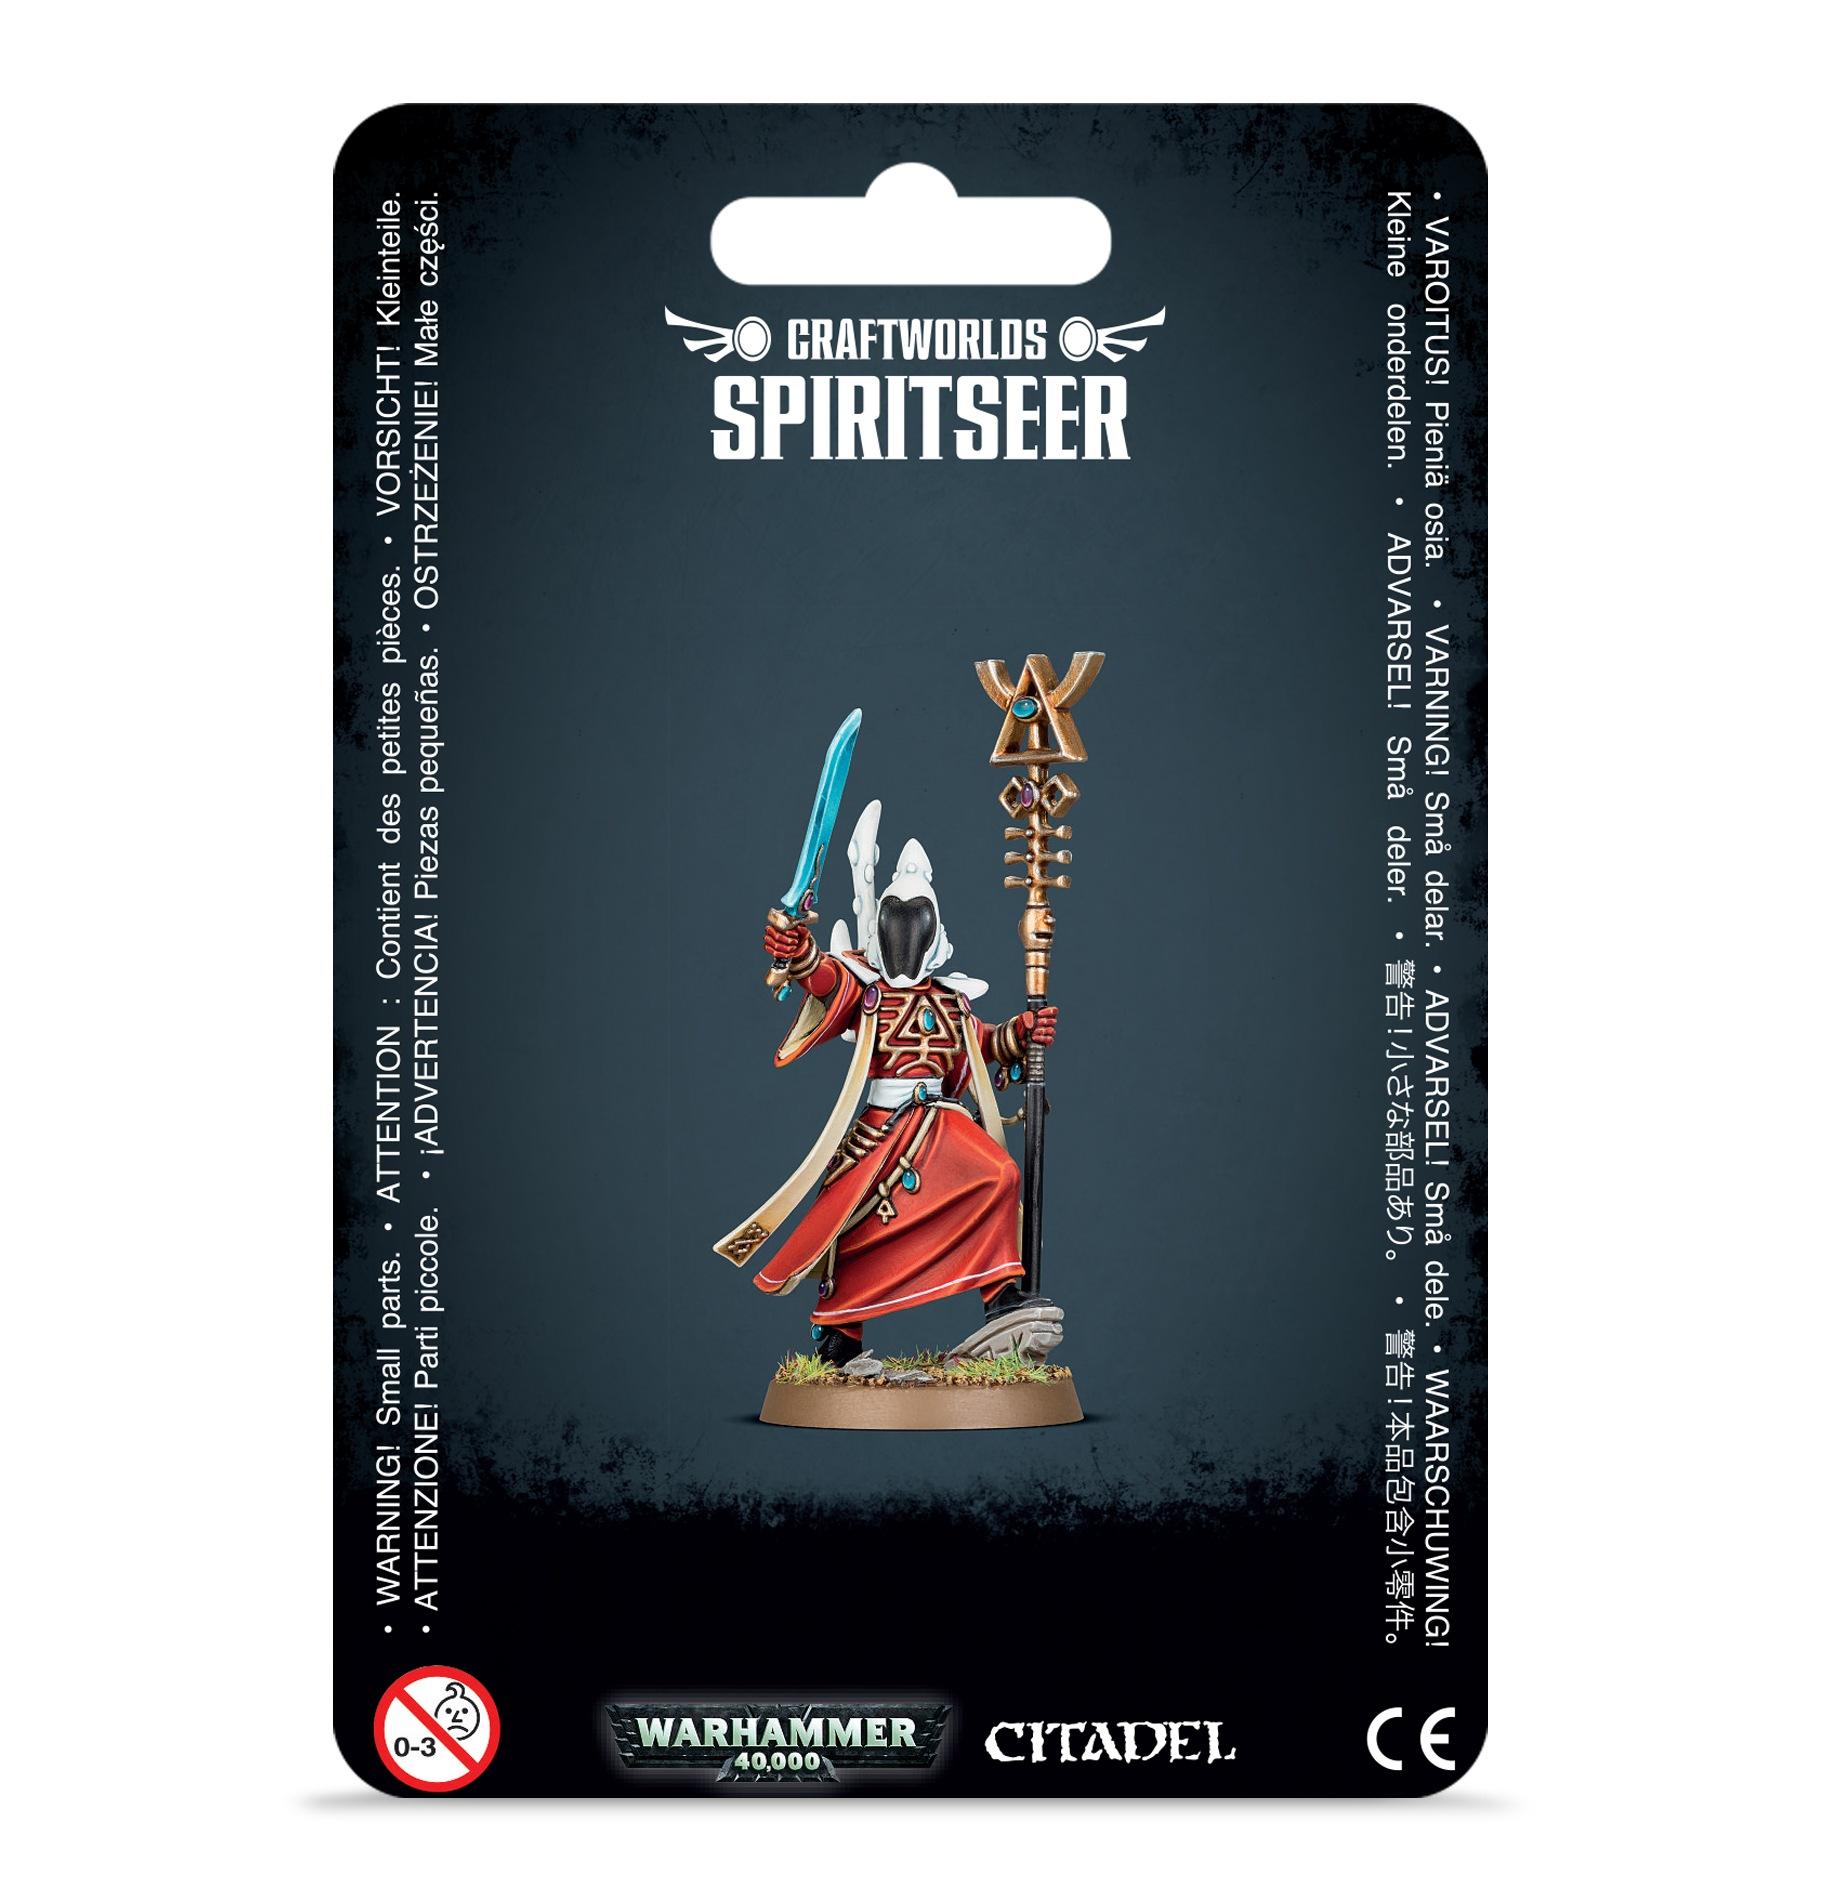 Warhammer 40,000 - Craftworlds: Spiritseer